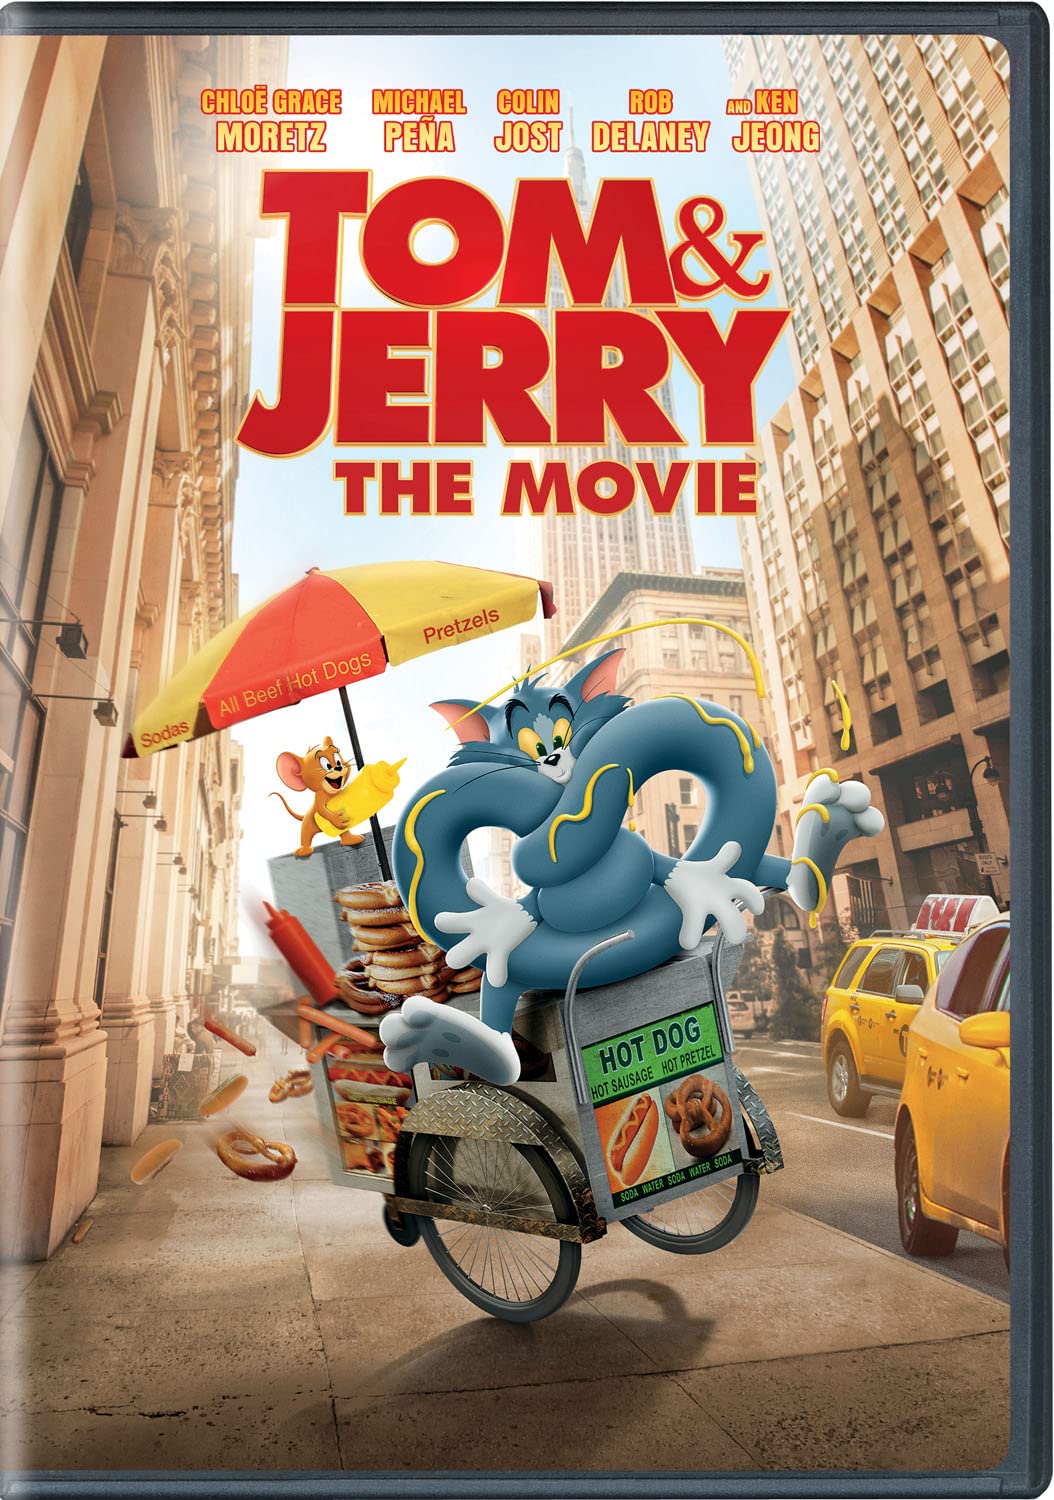 Tom & Jerry: The Movie - DVD [ 2021 ]  - Adventure Movies On DVD - Movies On GRUV